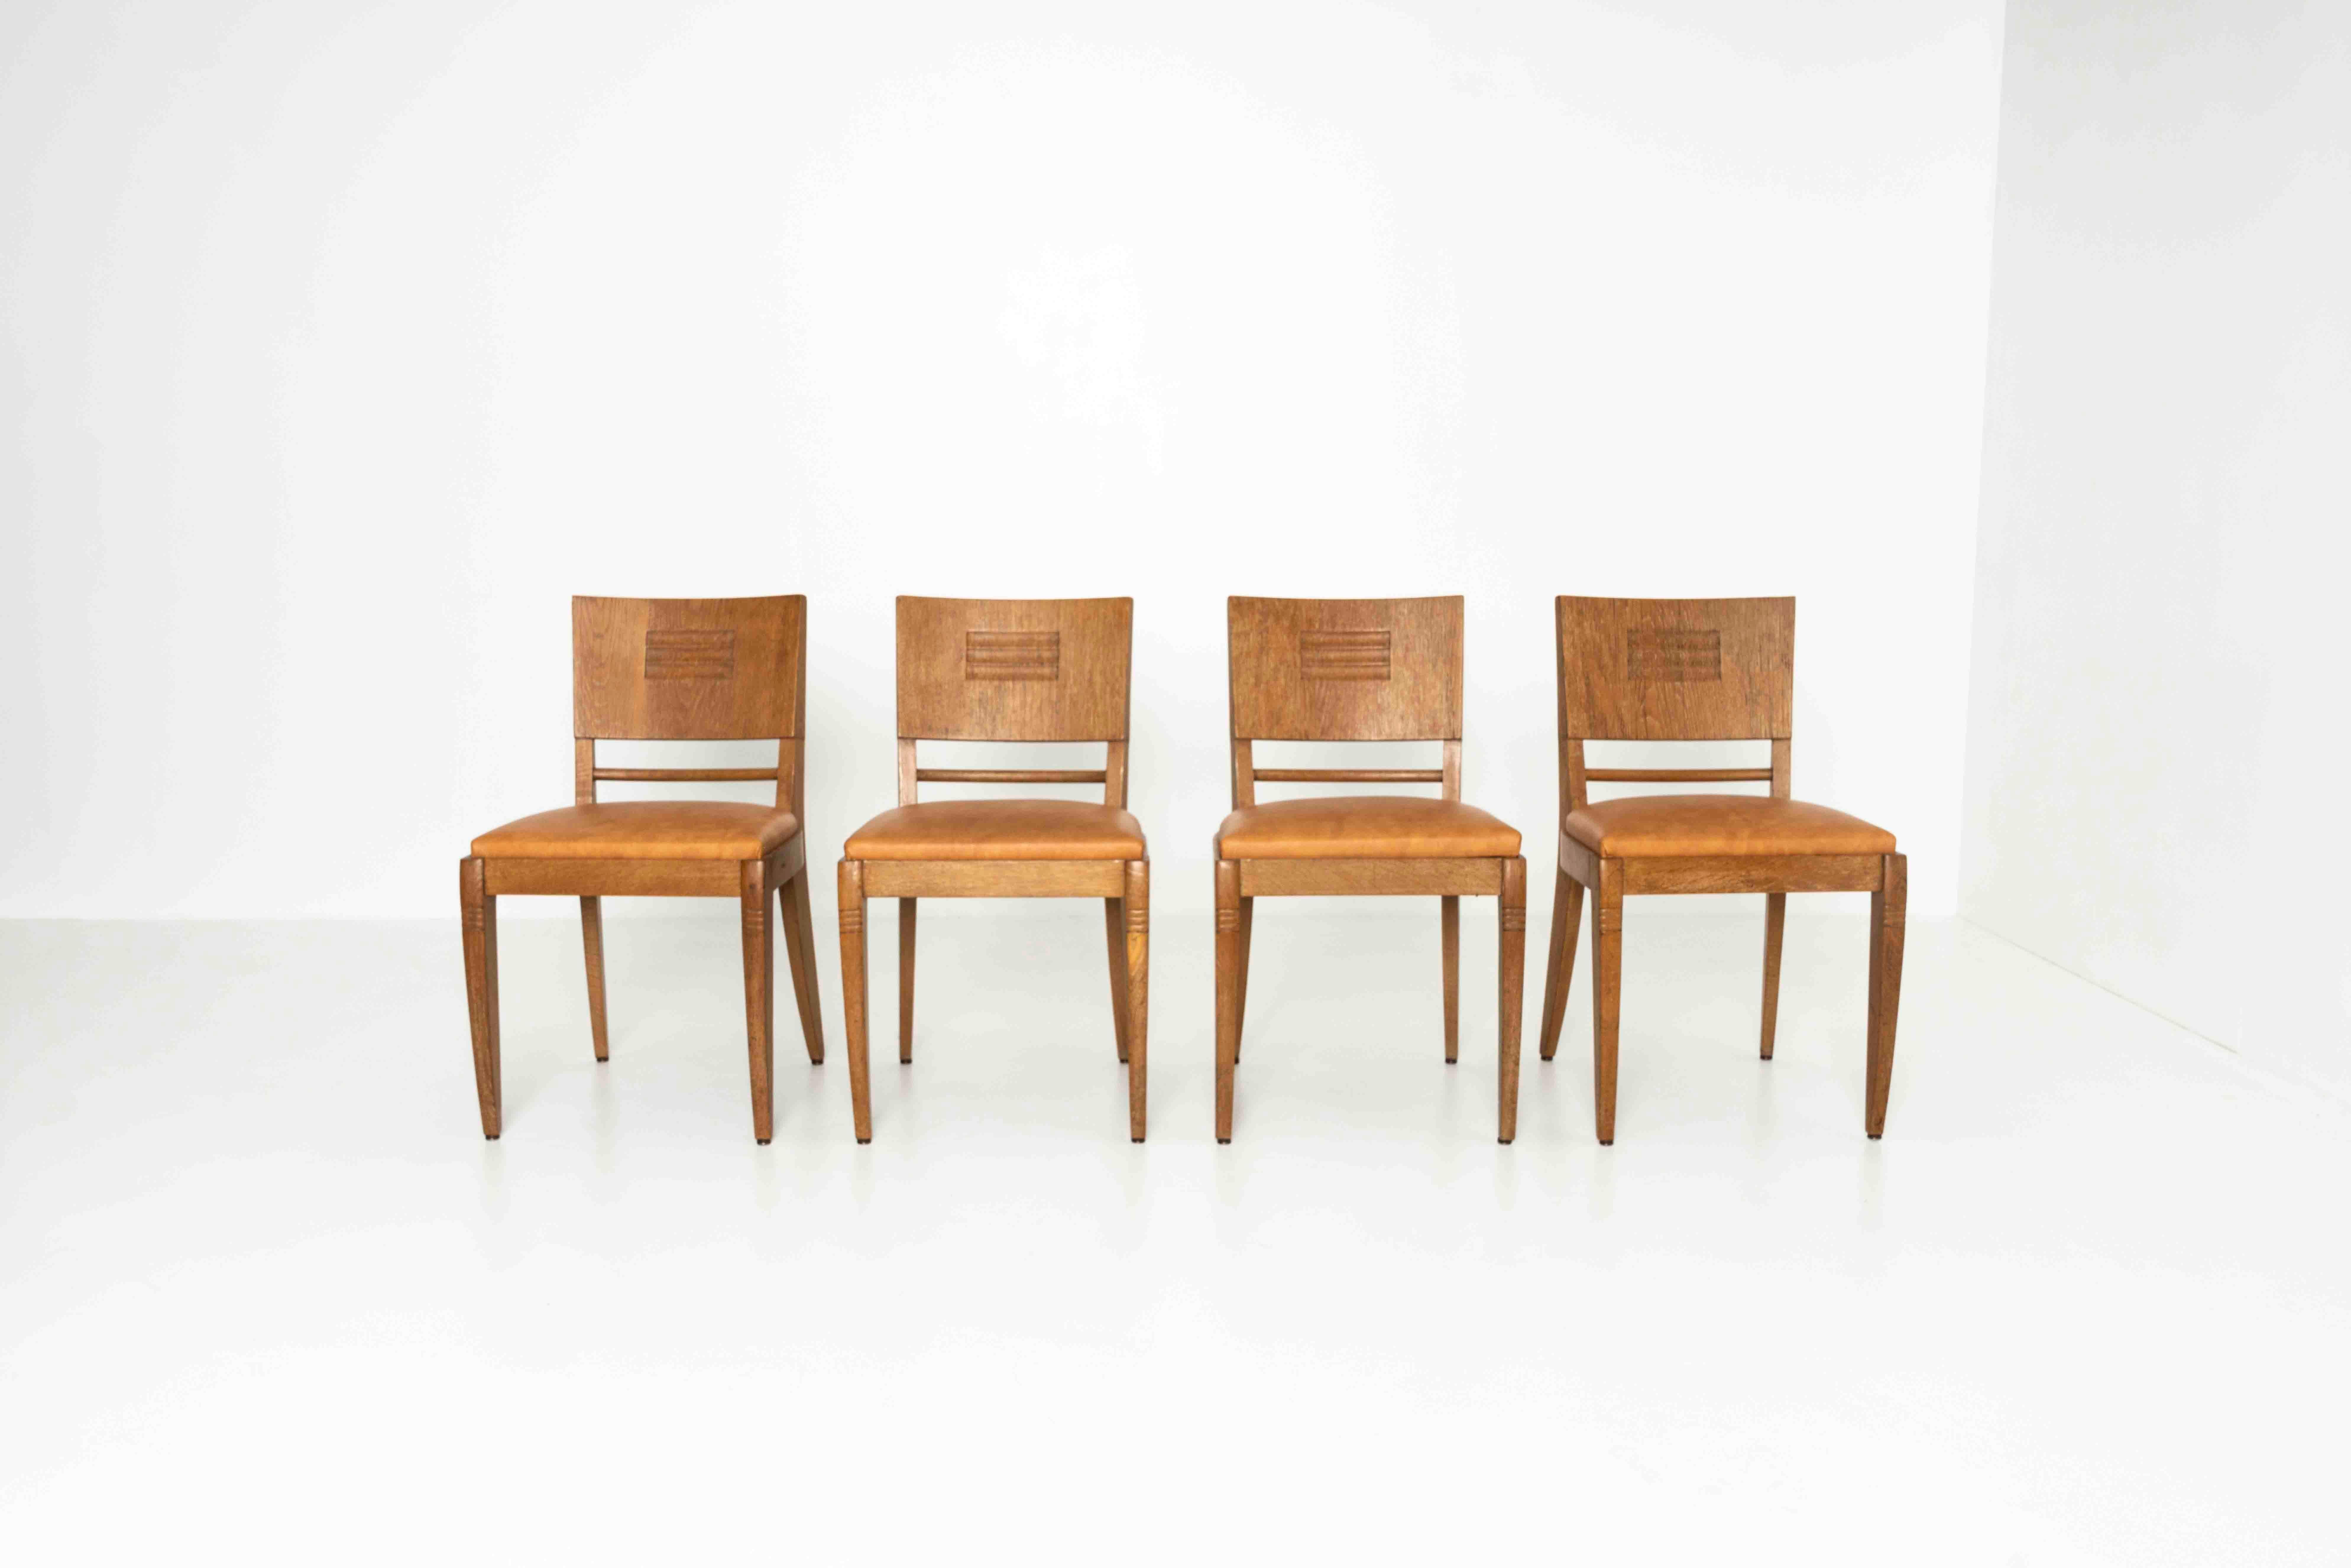 Ensemble de quatre chaises de salle à manger en chêne avec des sièges en cuir de France, très probablement des années 1950. Le style nous rappelle les dessins de Guillerme et Chambron avec un design très rustique et robuste. Les chaises sont en bon